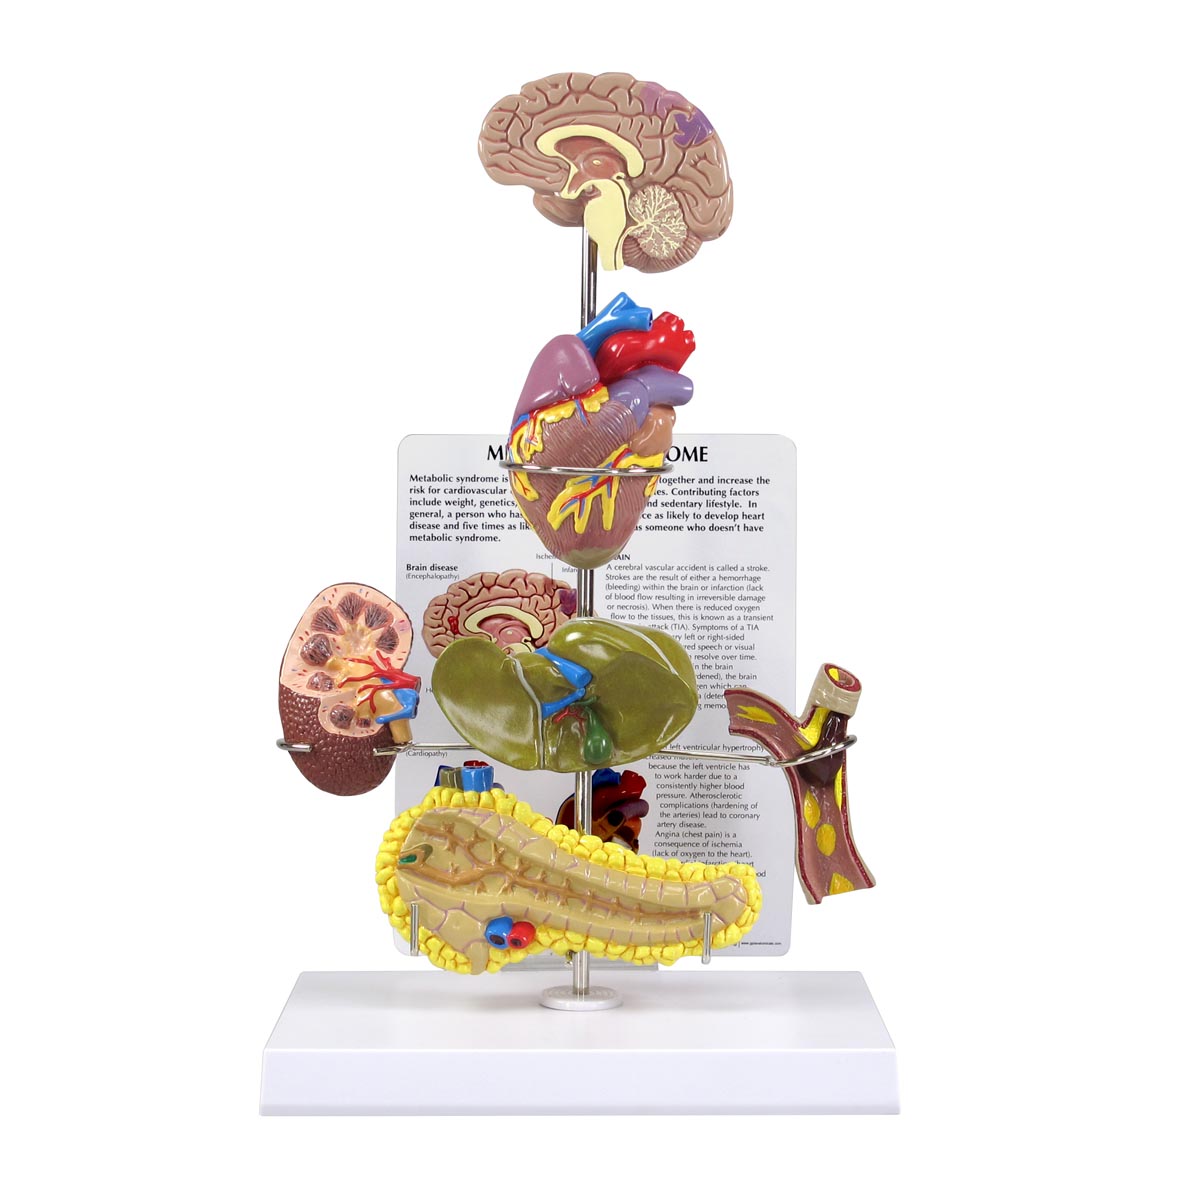 Modell eines metabolischen Syndroms, Bestellnummer 1019575, 4020, GPI Anatomicals